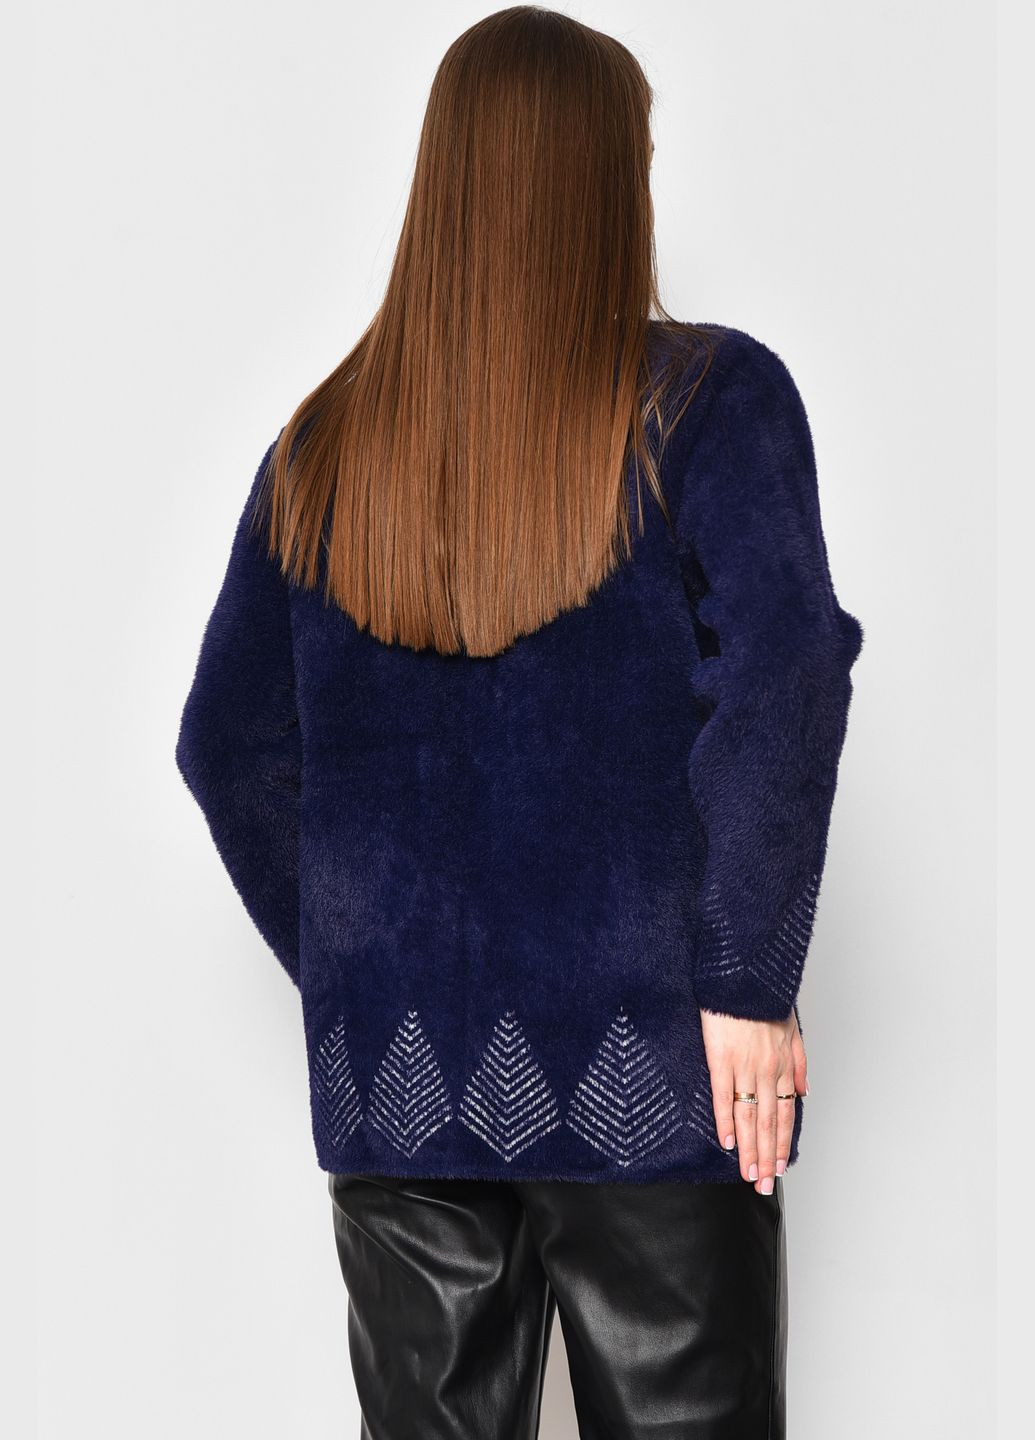 Темно-синий демисезонный кардиган женский альпака темно-синего цвета пуловер Let's Shop